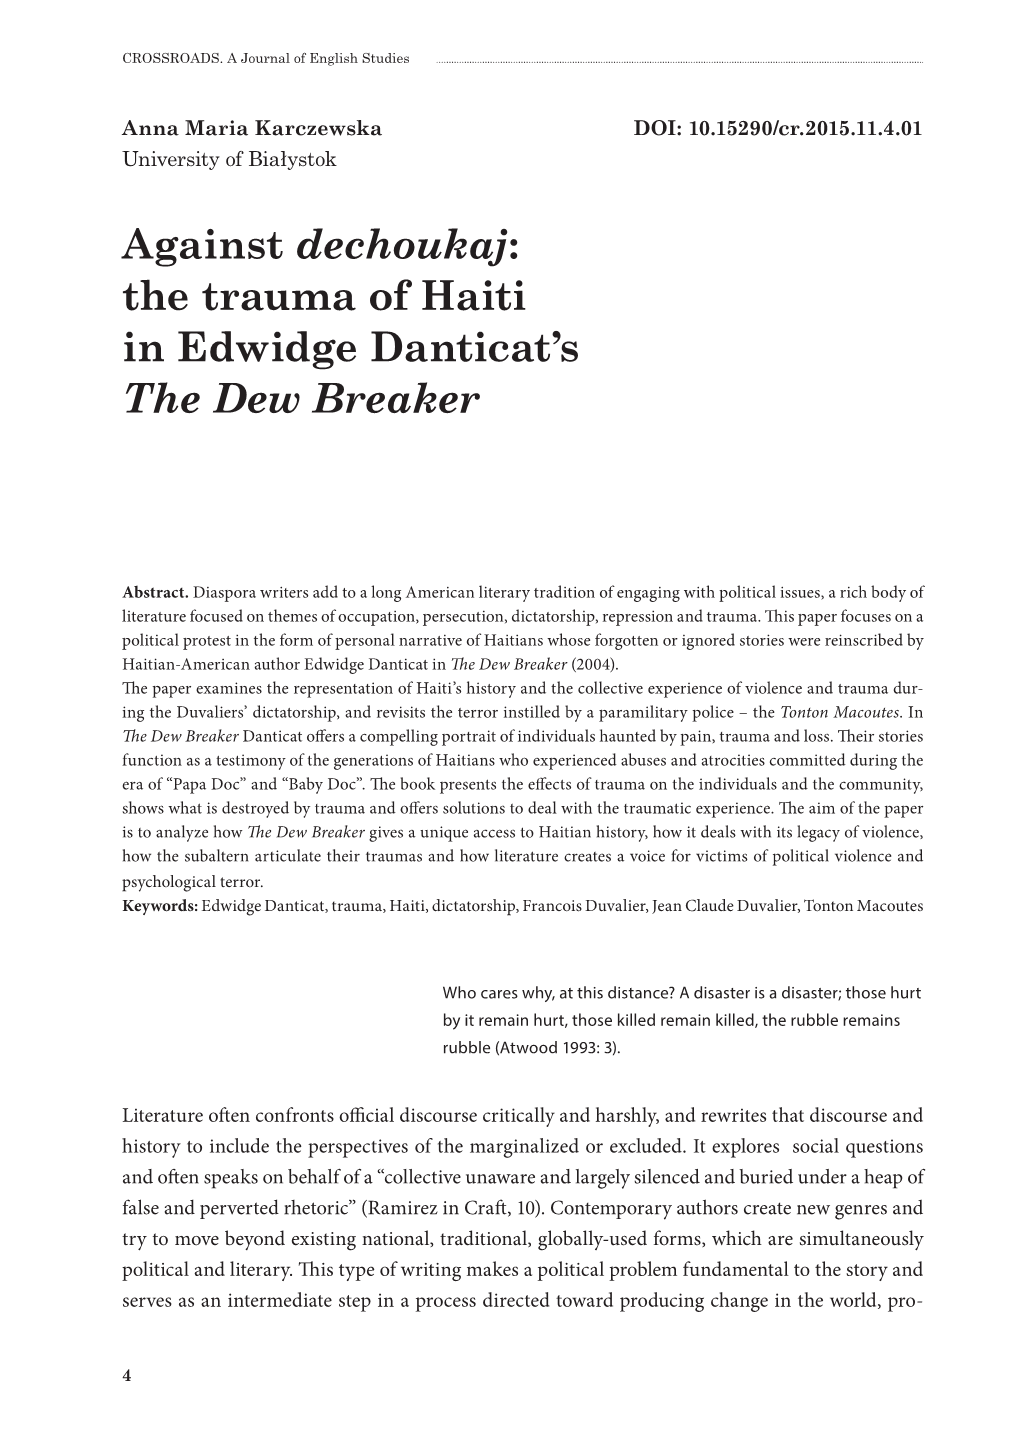 Against Dechoukaj: the Trauma of Haiti in Edwidge Danticat's the Dew